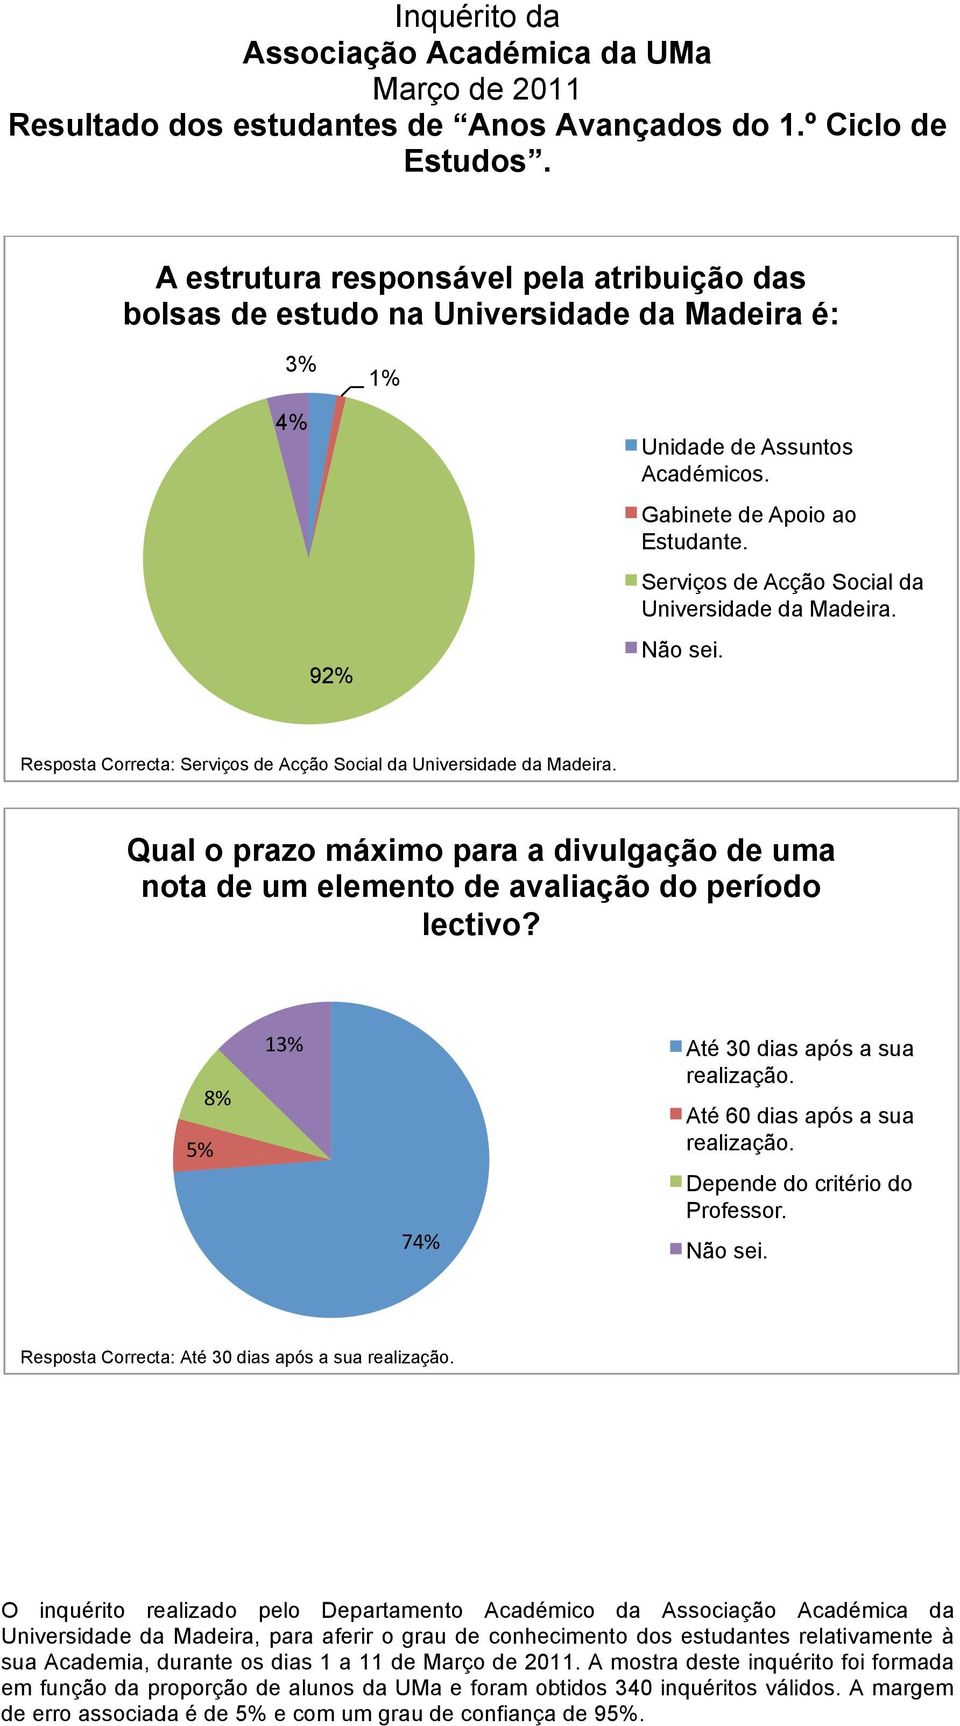 Resposta Correcta: Serviços de Acção Social da Universidade da Madeira.